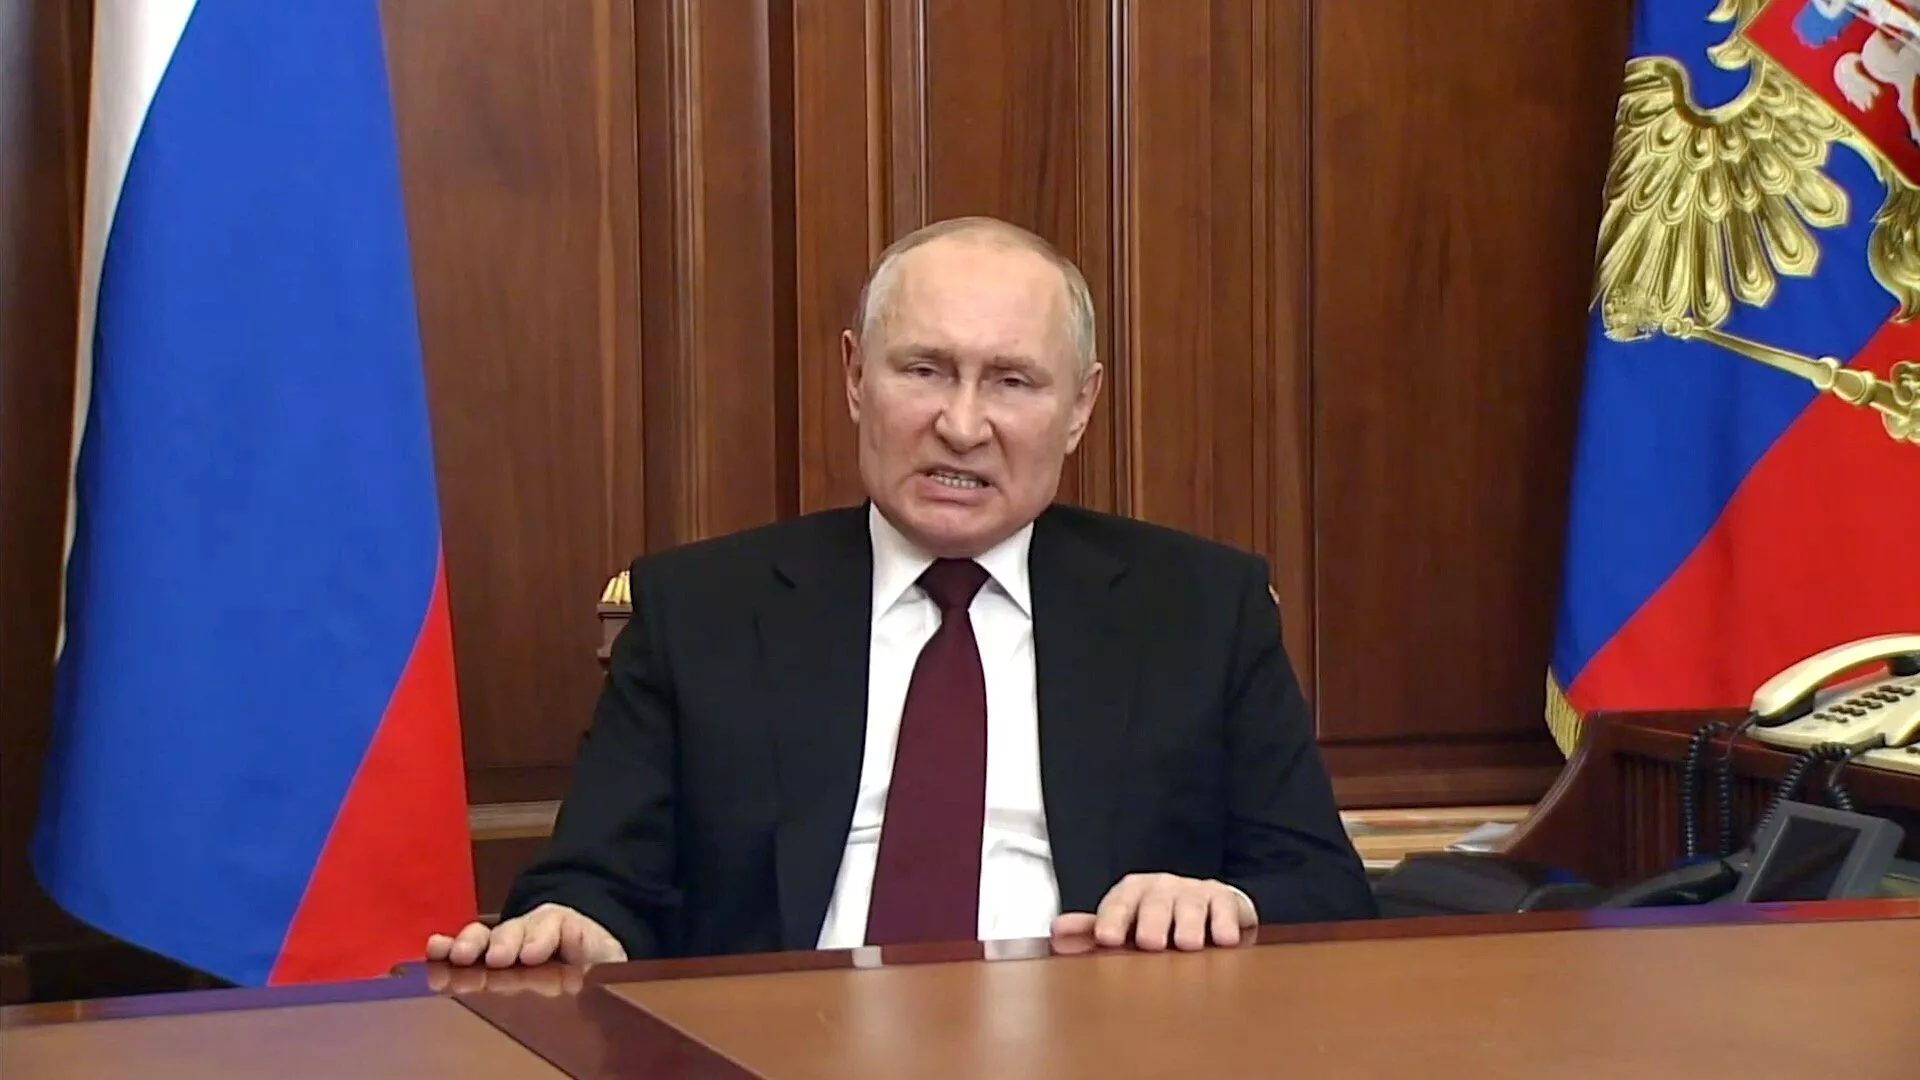 Все больше людей в Кремле утверждаются в мысли, что Путин болен и не вполне в здравом рассудке